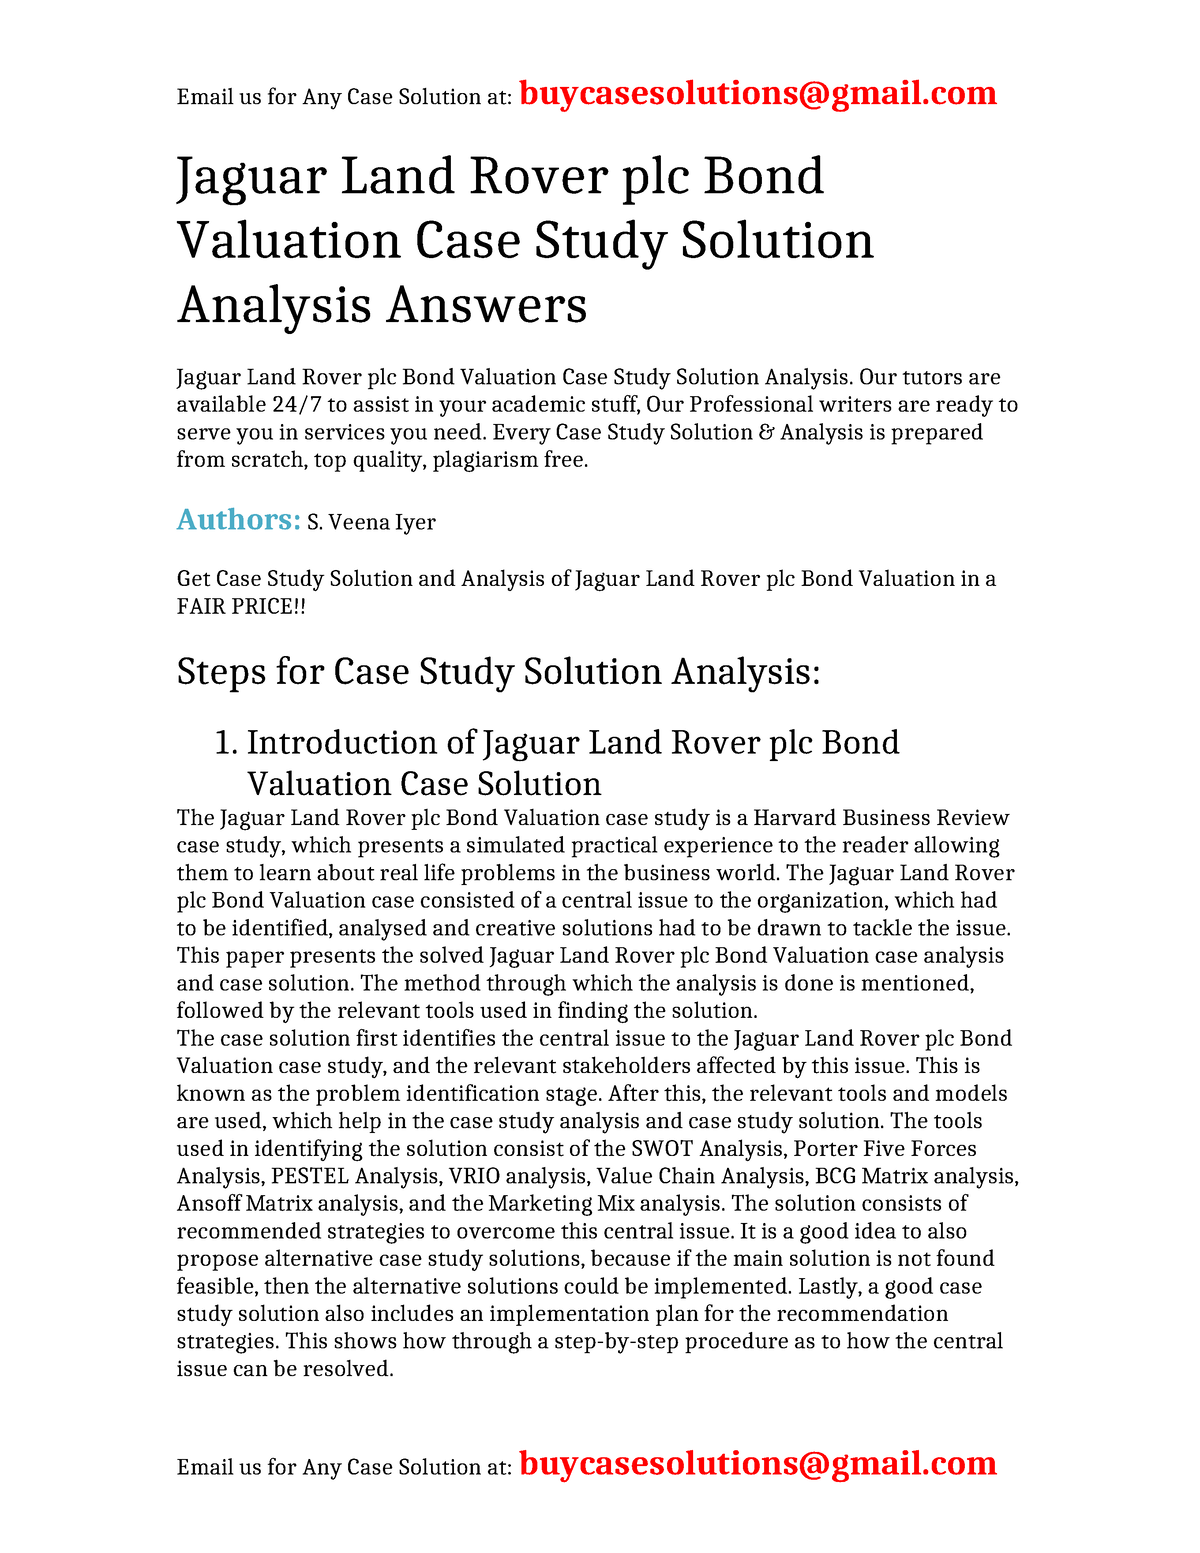 jaguar land rover bond valuation case study solution